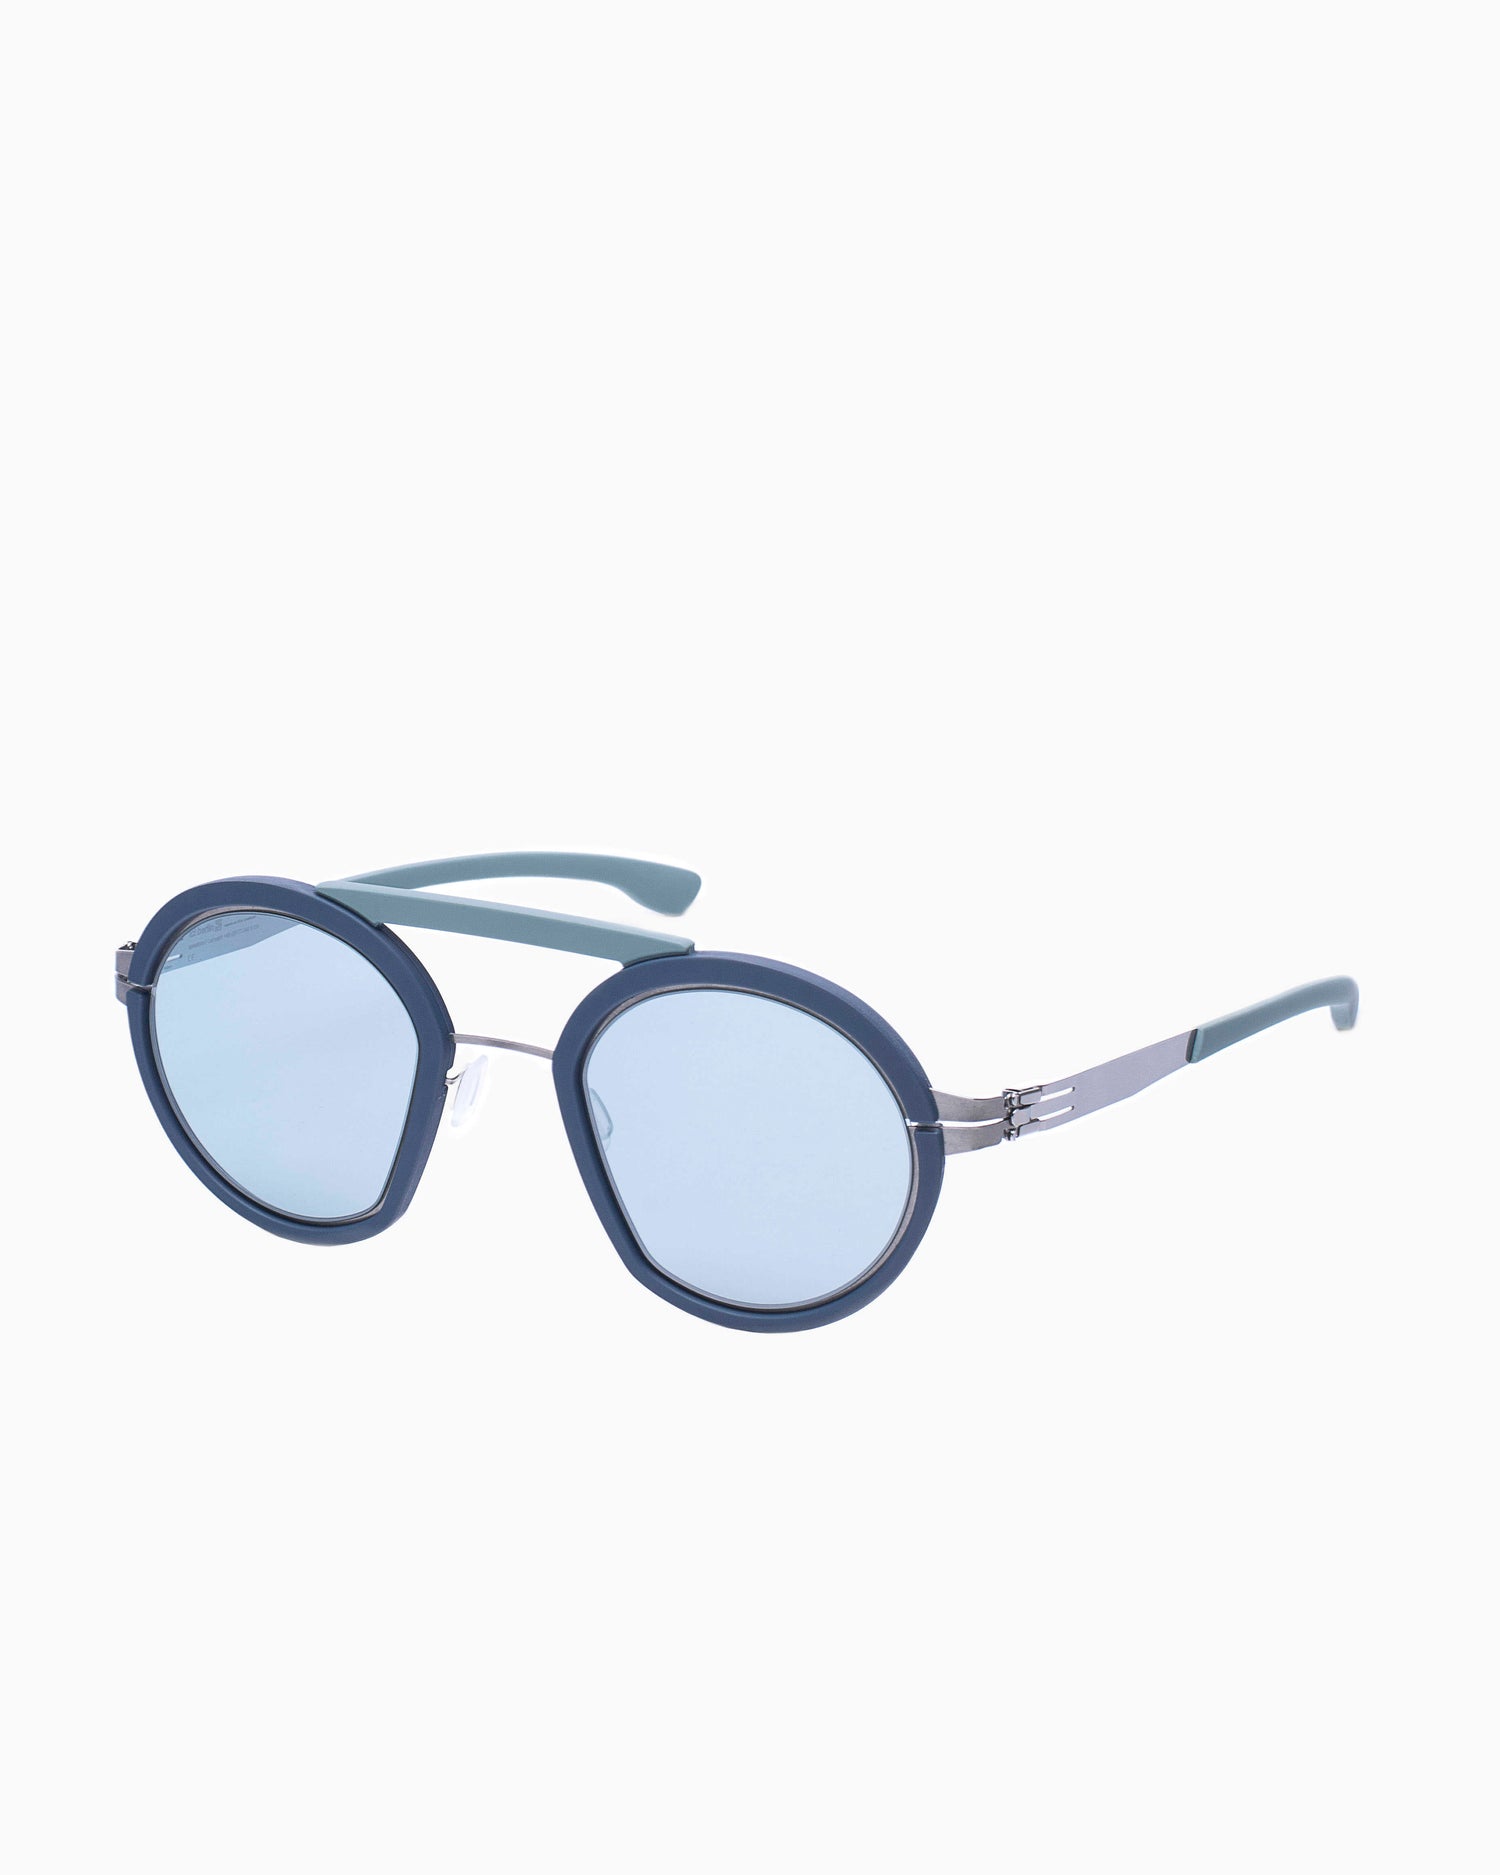 Ic Berlin - thesupervillain - chrome-blue-mint | Bar à lunettes:  Marie-Sophie Dion